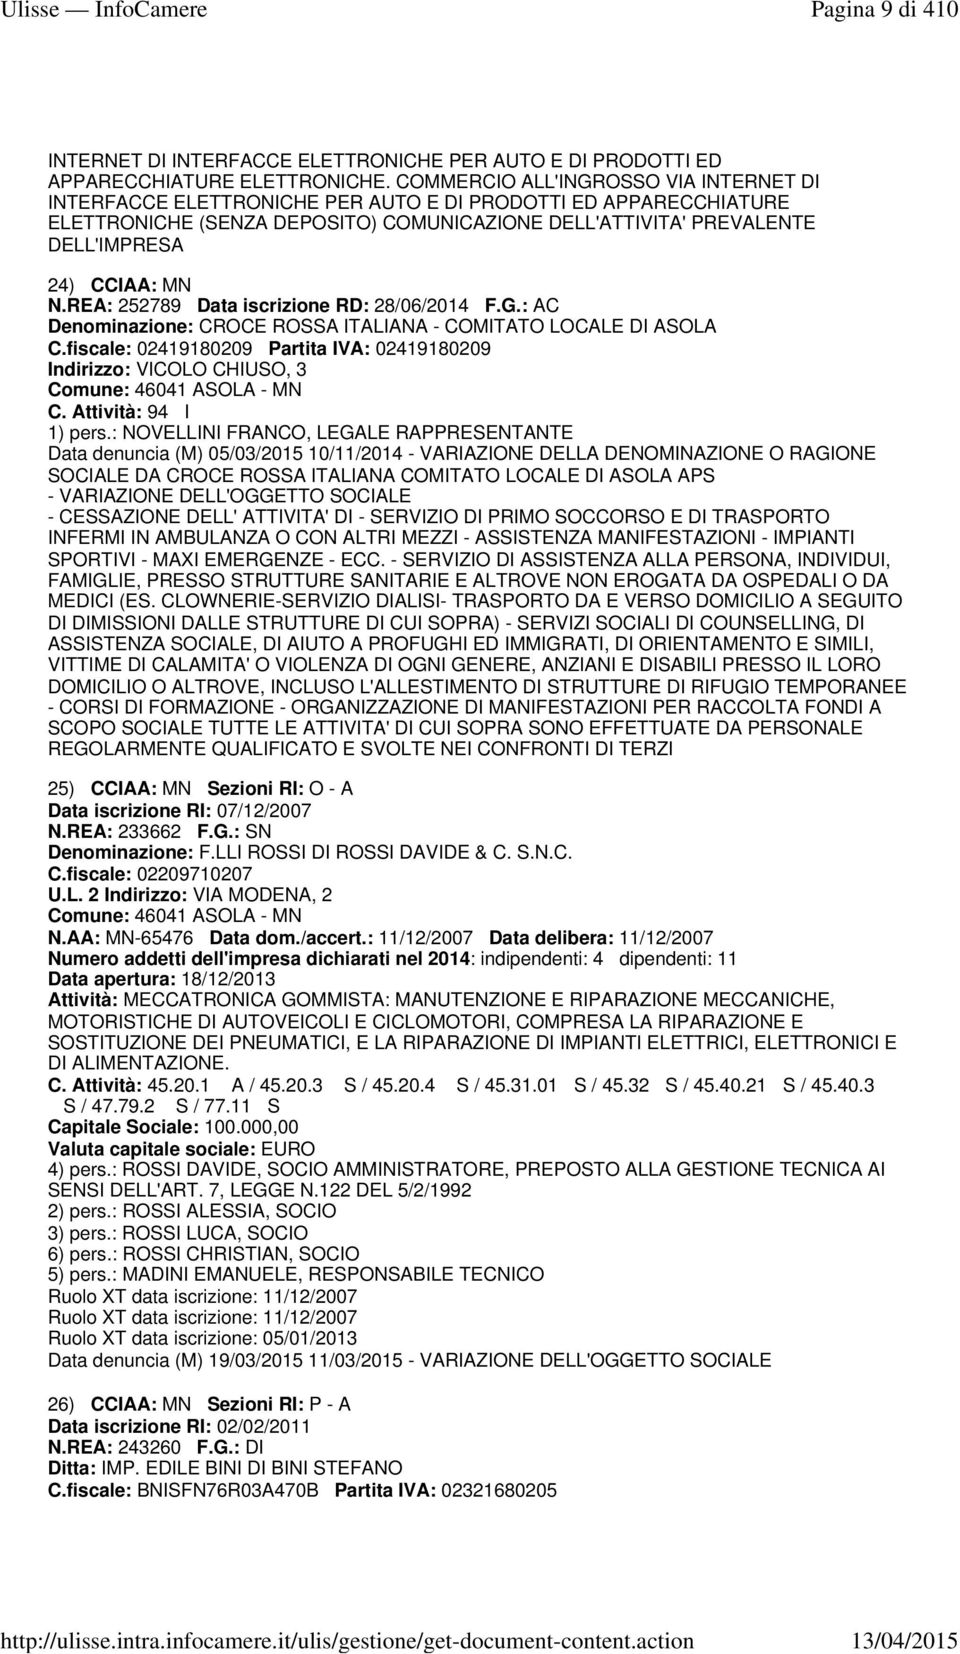 MN N.REA: 252789 Data iscrizione RD: 28/06/2014 F.G.: AC Denominazione: CROCE ROSSA ITALIANA - COMITATO LOCALE DI ASOLA C.